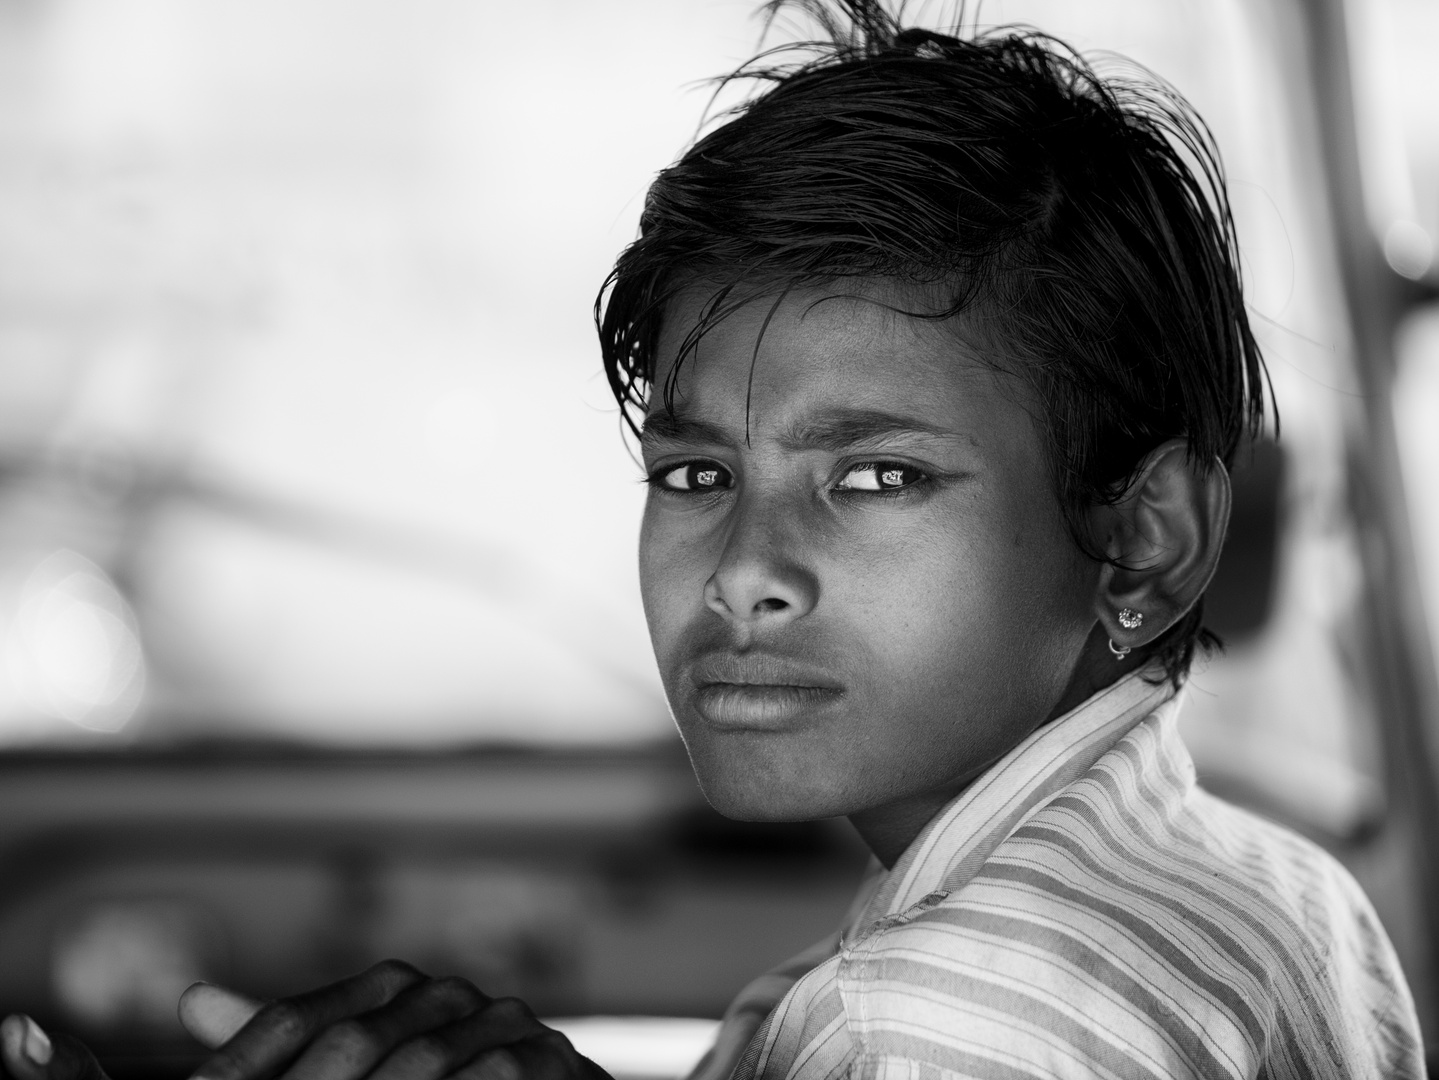 Junge in Jaisalmer